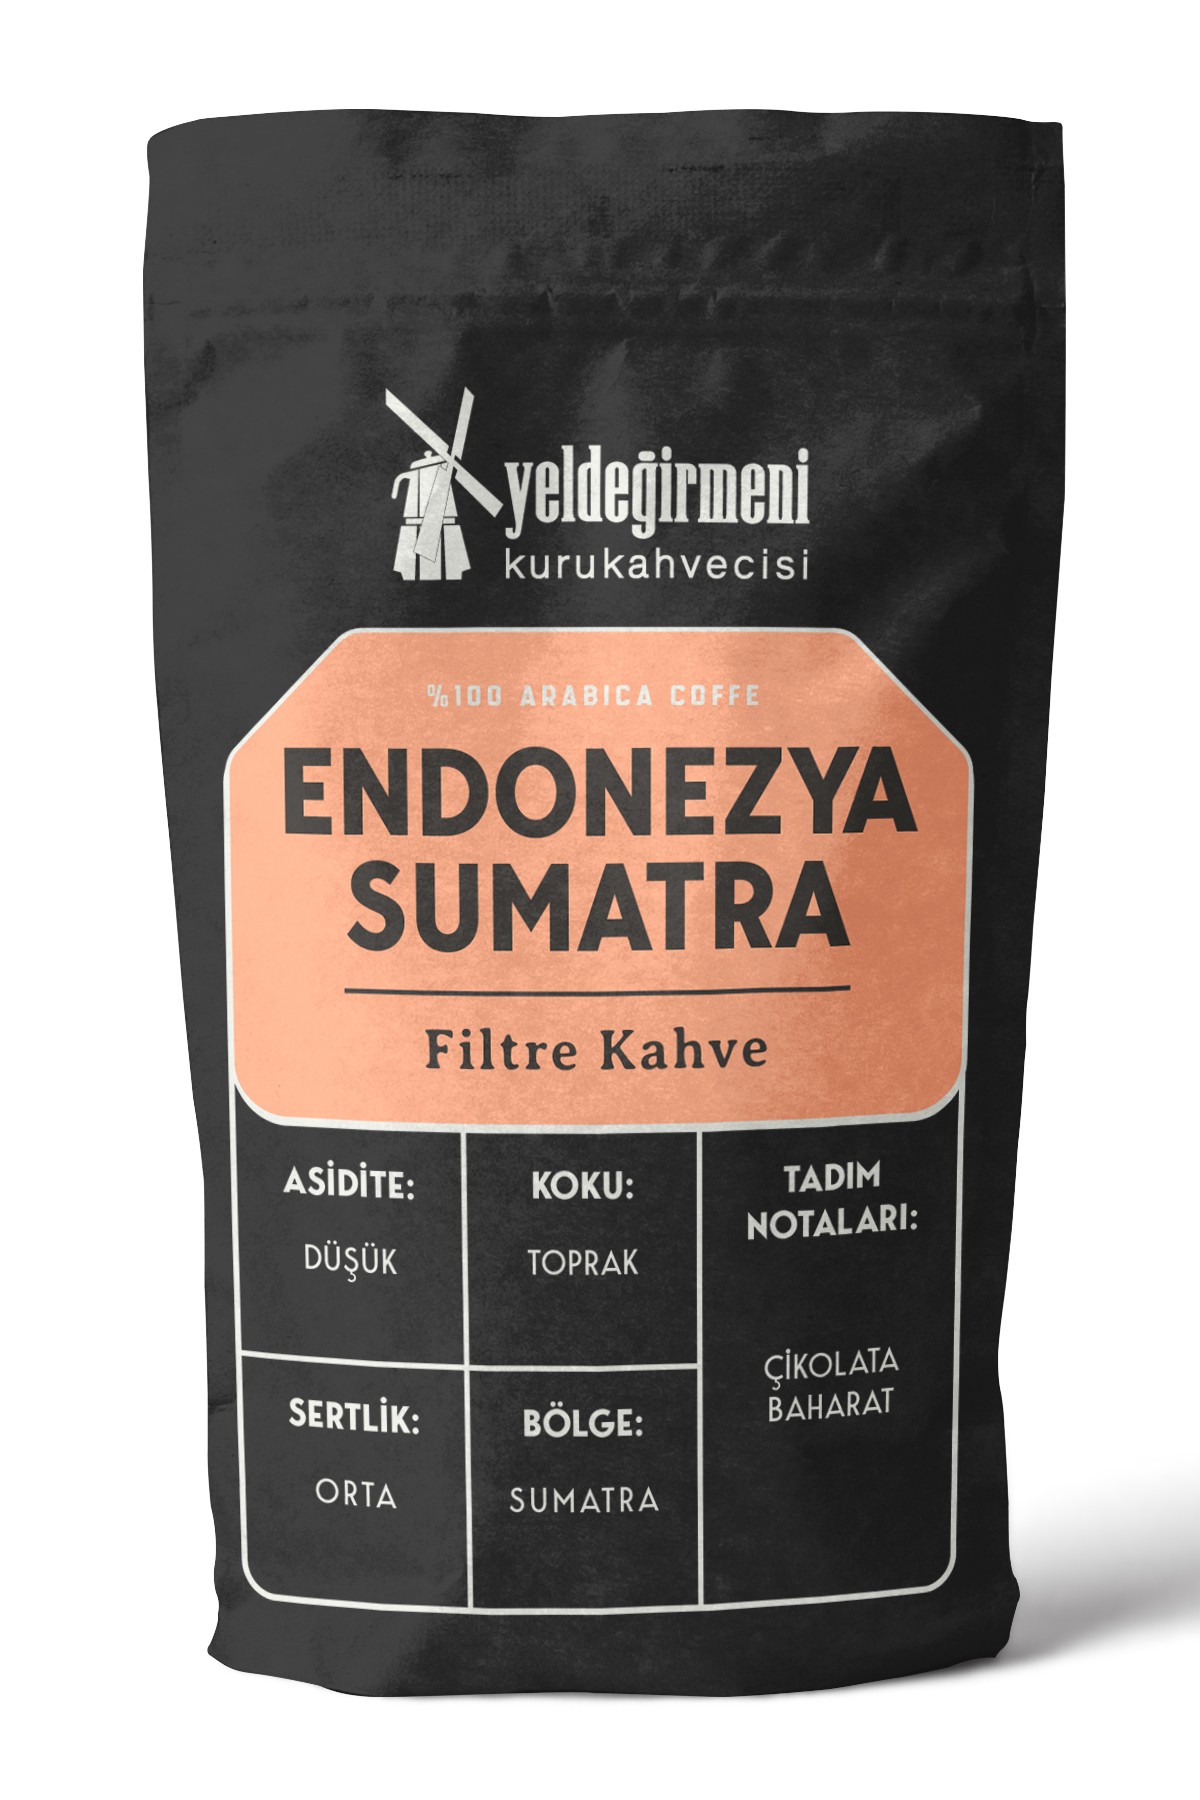 Endonezya Sumatra Filtre Kahve